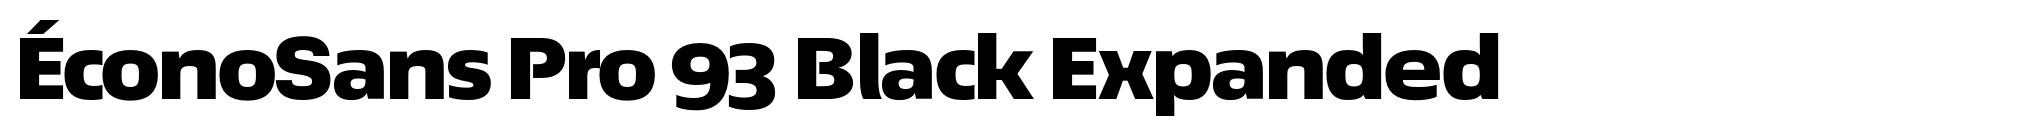 ÉconoSans Pro 93 Black Expanded image